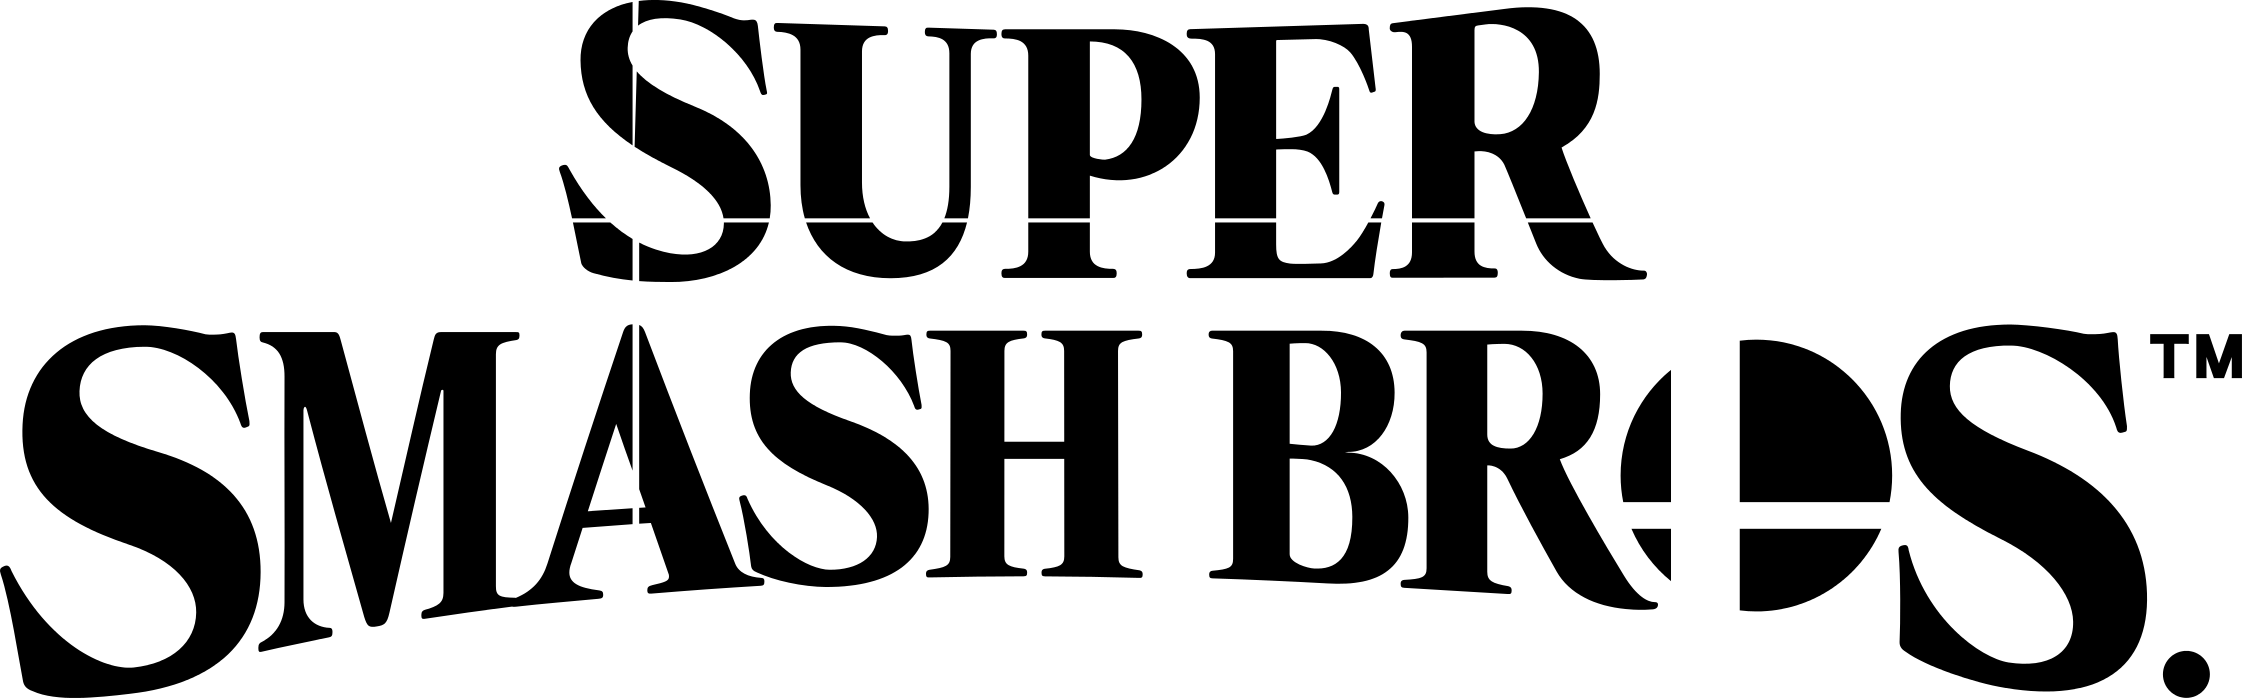 Super Smash Bros Logo Background PNG Image